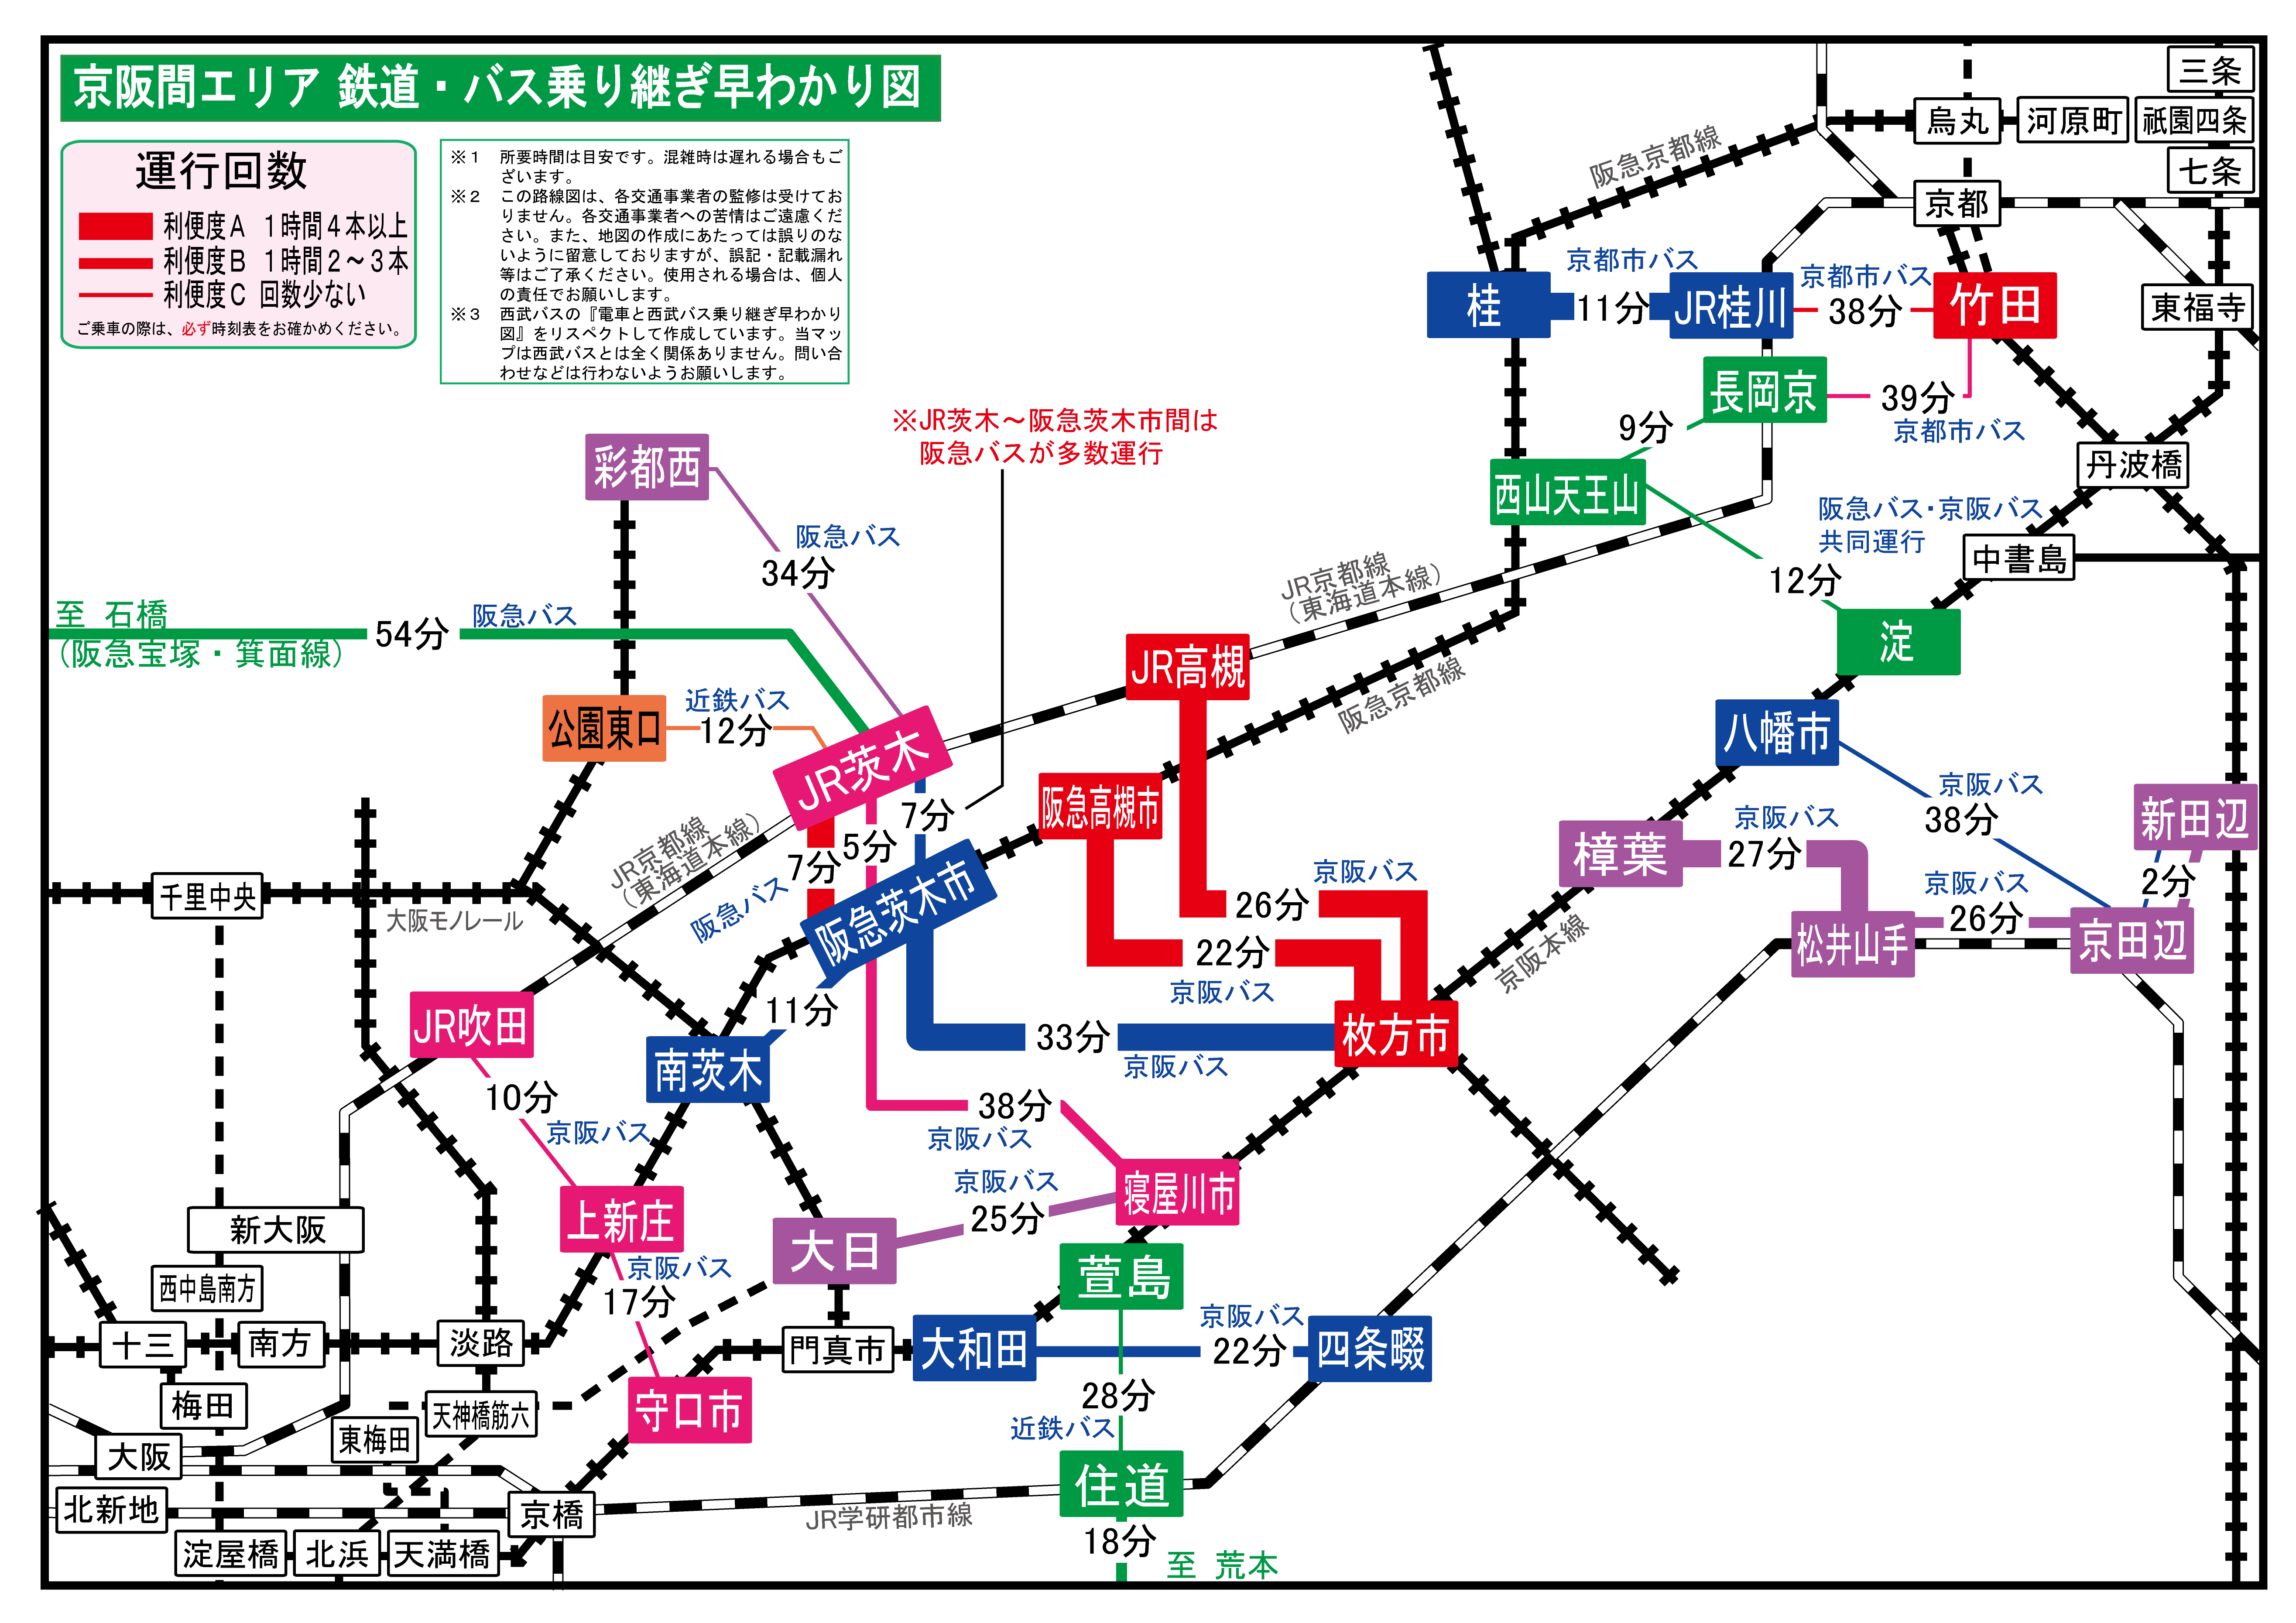 京阪間エリア 鉄道 バス乗り継ぎ早わかり図 旅とまちなみとパインどうでしょう